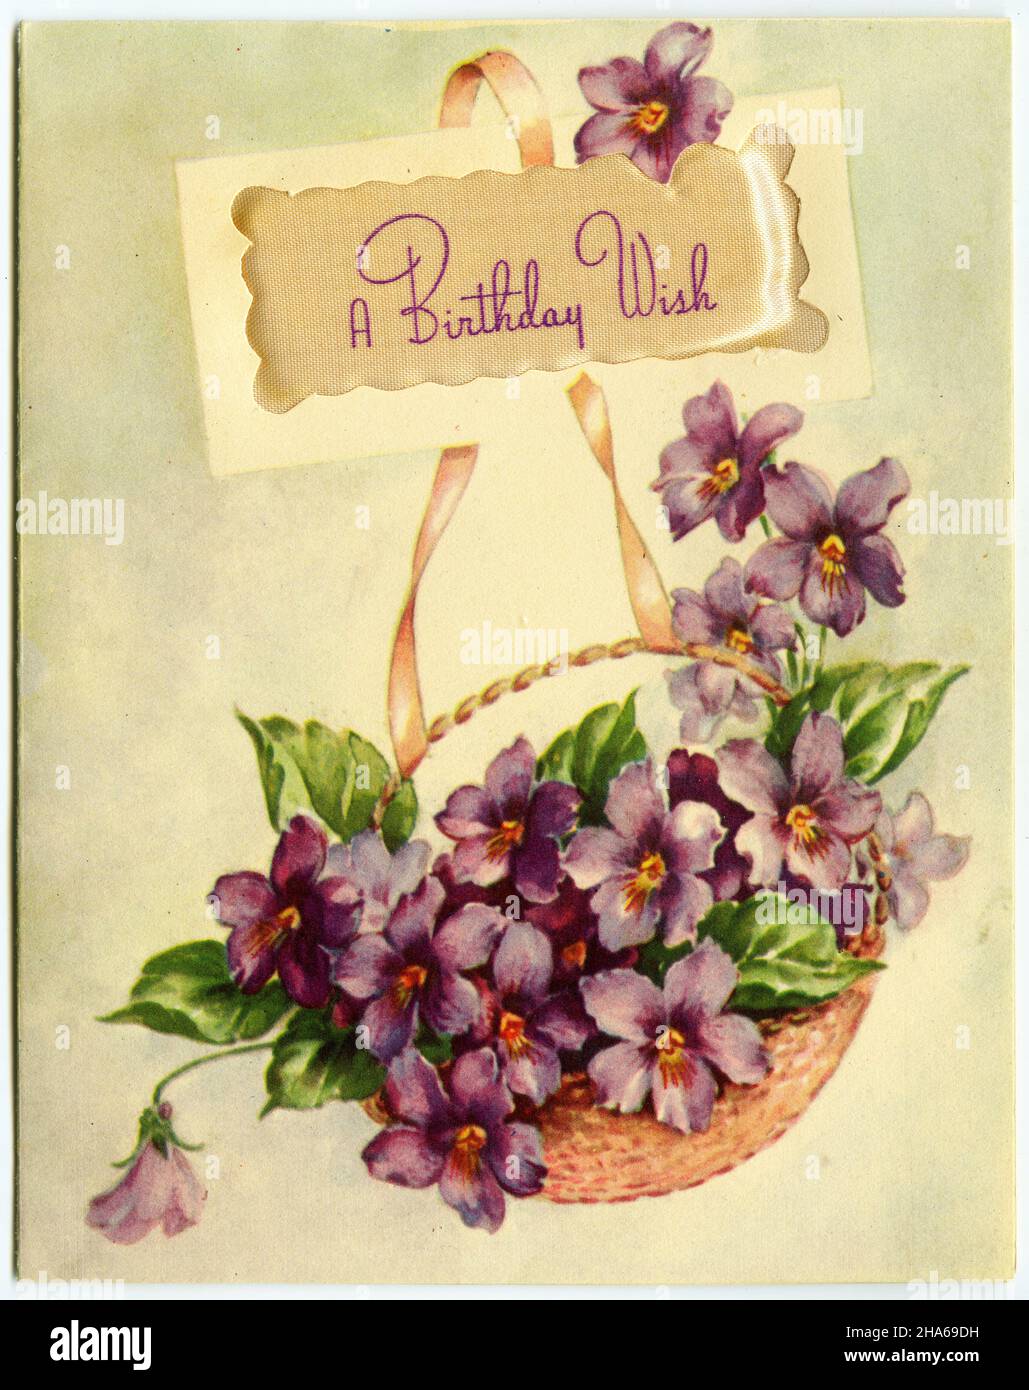 Le design rétro d'une carte d'anniversaire comprend un bouquet de fleurs, vers 1940 Banque D'Images